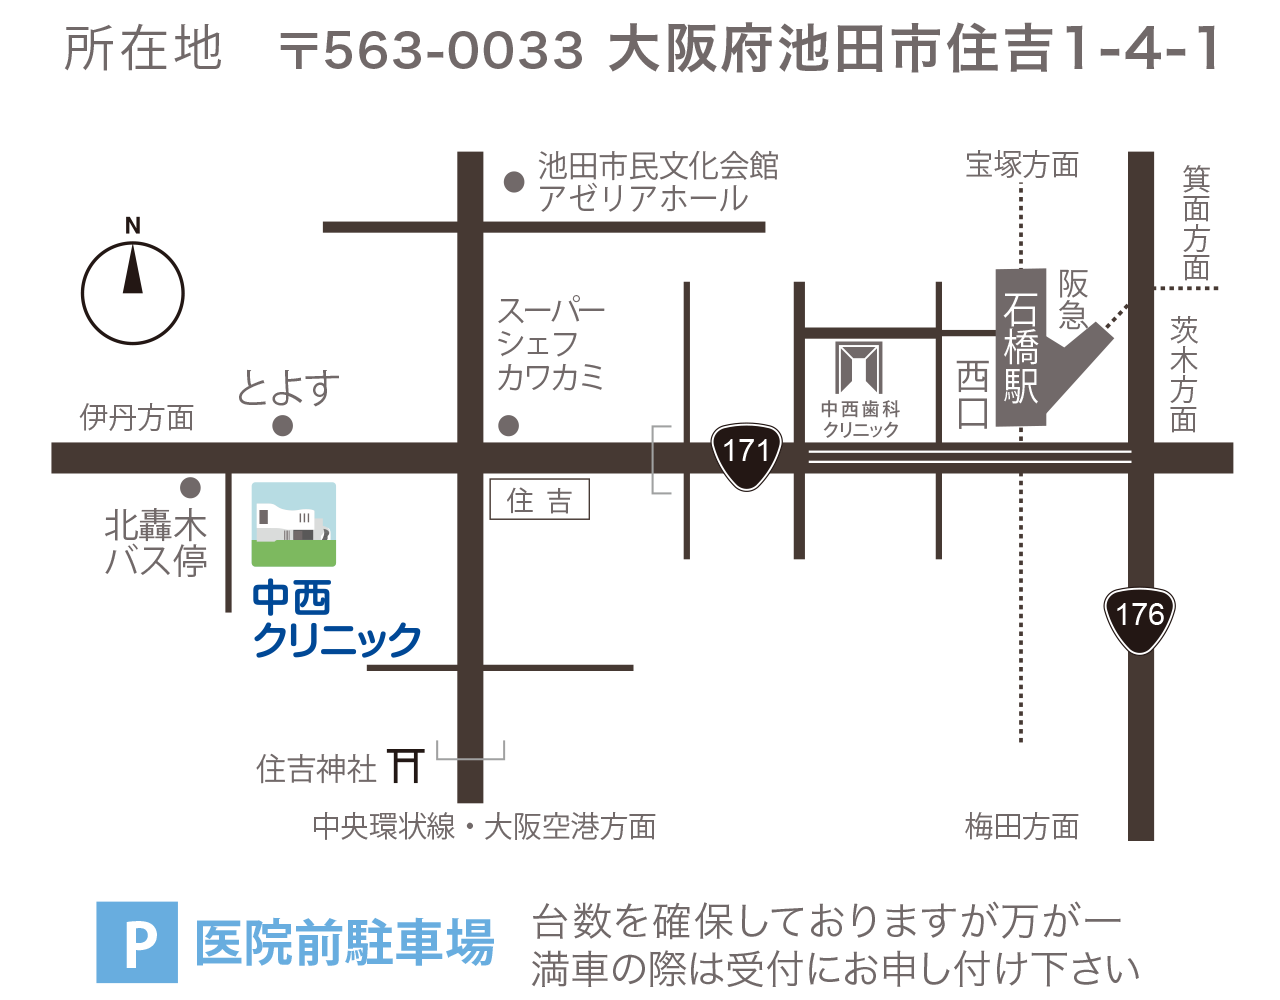 所在地：〒563-0033 大阪府池田市住吉1-4-1。中西クリニックは、北轟木バス停及びとよすの近く、阪急石橋駅からすぐです。